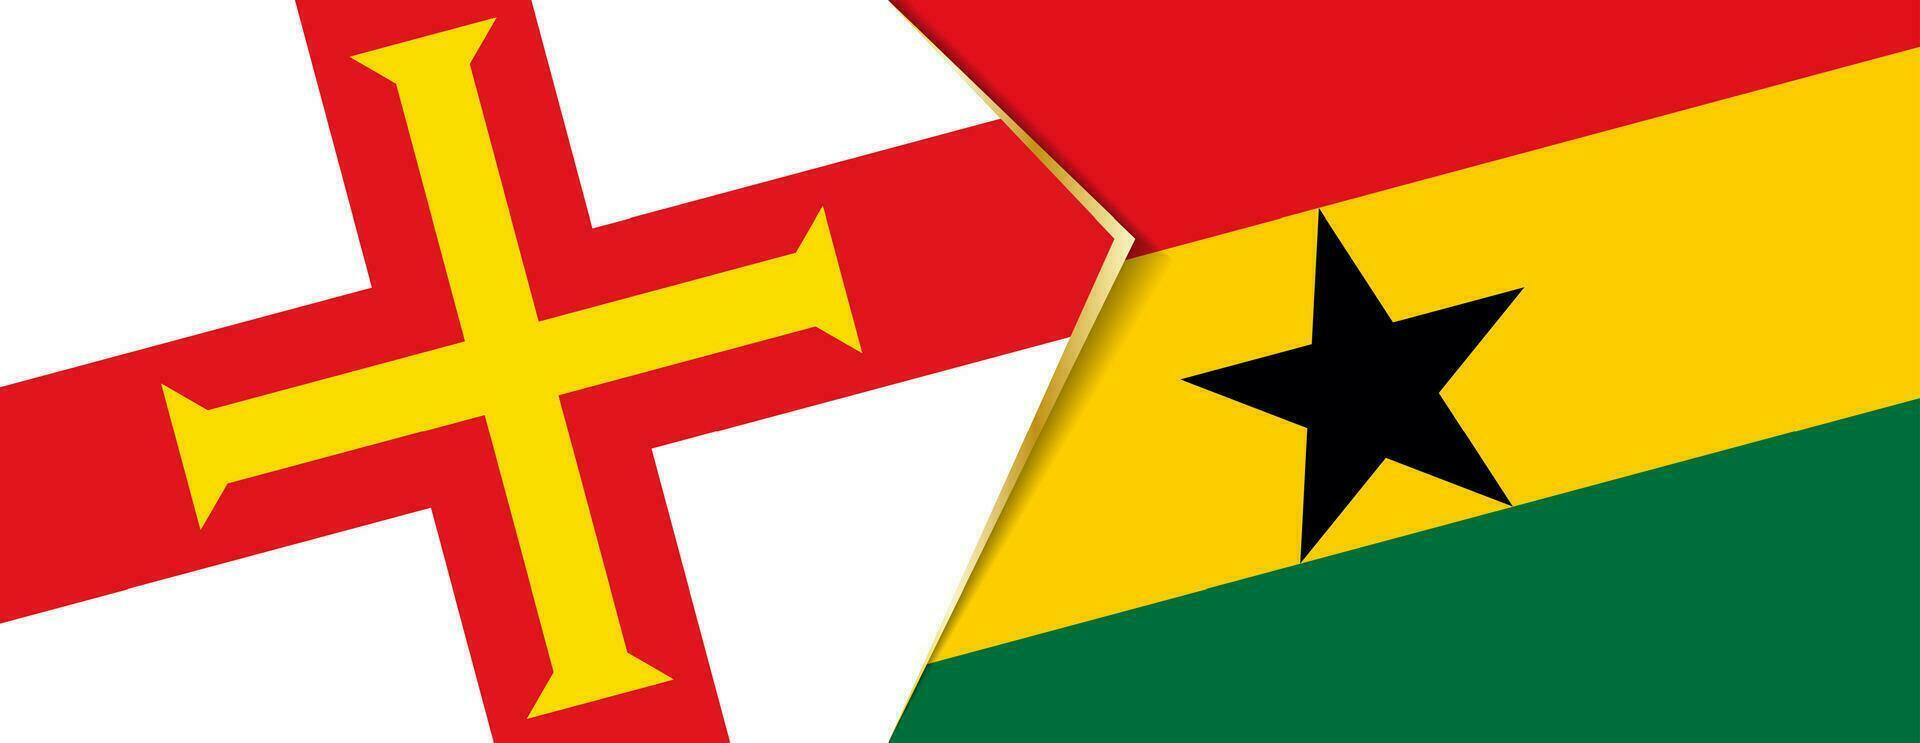 Guernesey et Ghana drapeaux, deux vecteur drapeaux.